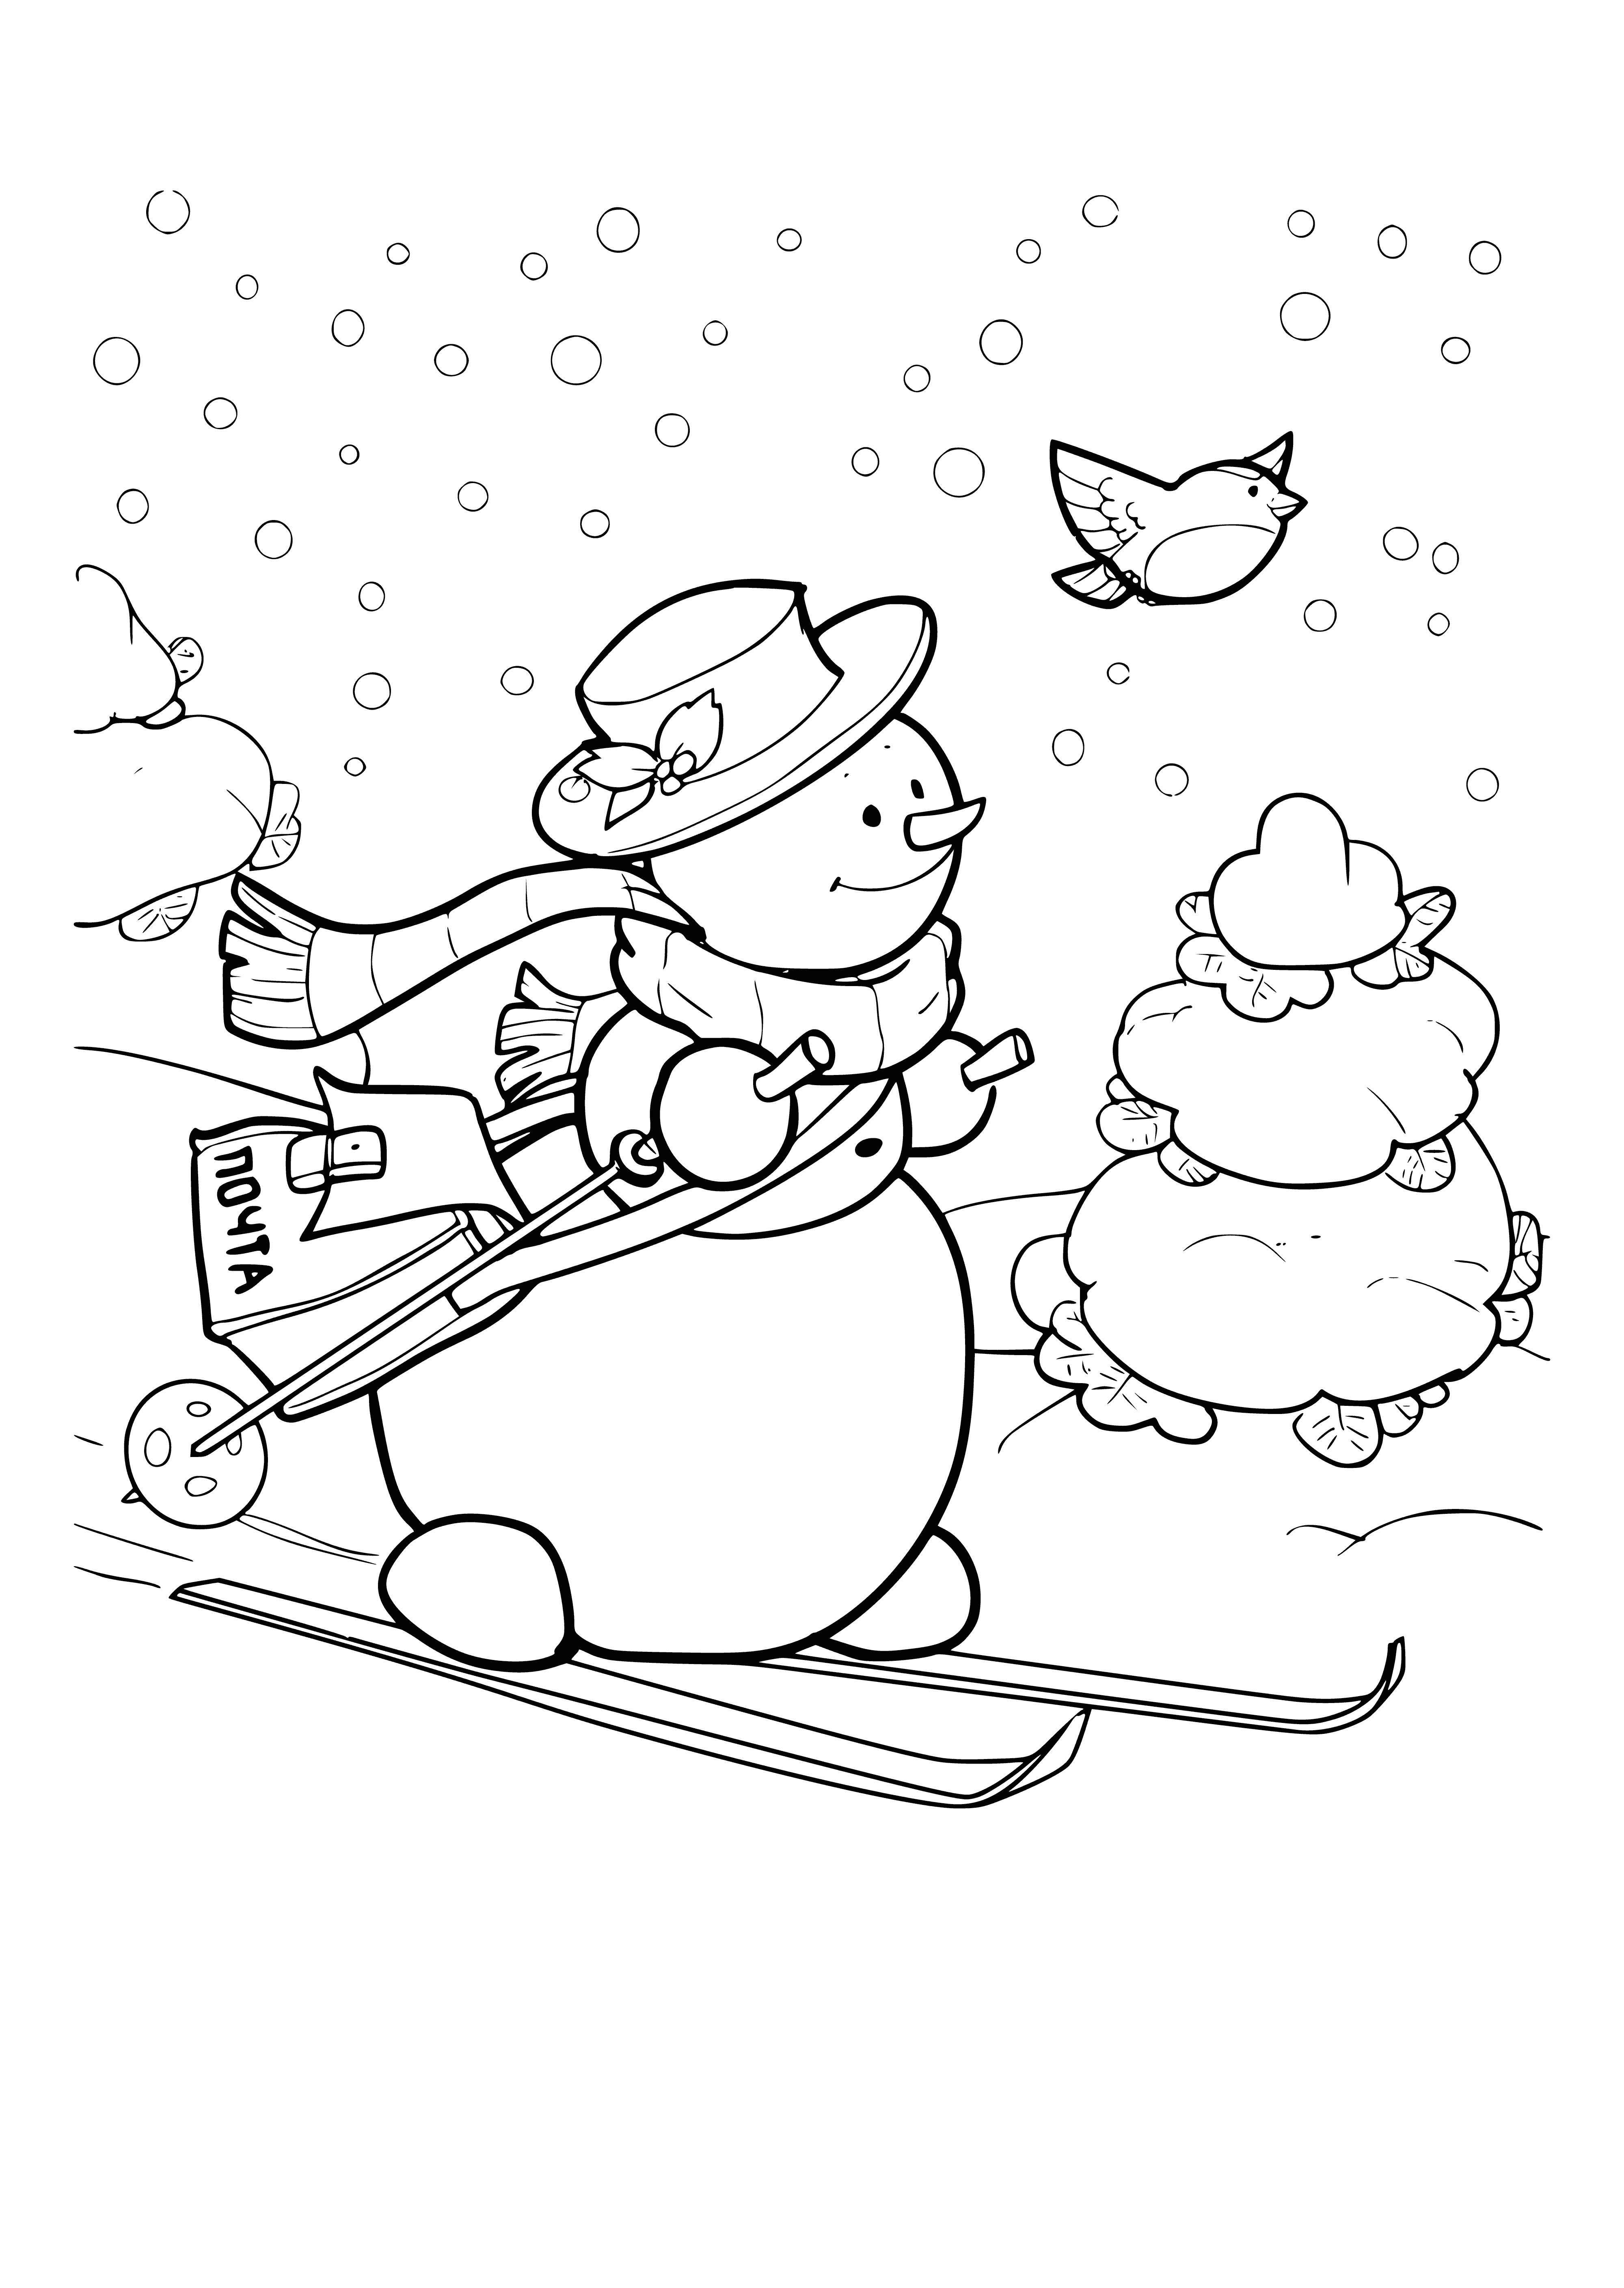 Sneeuwpop mailer kleurplaat